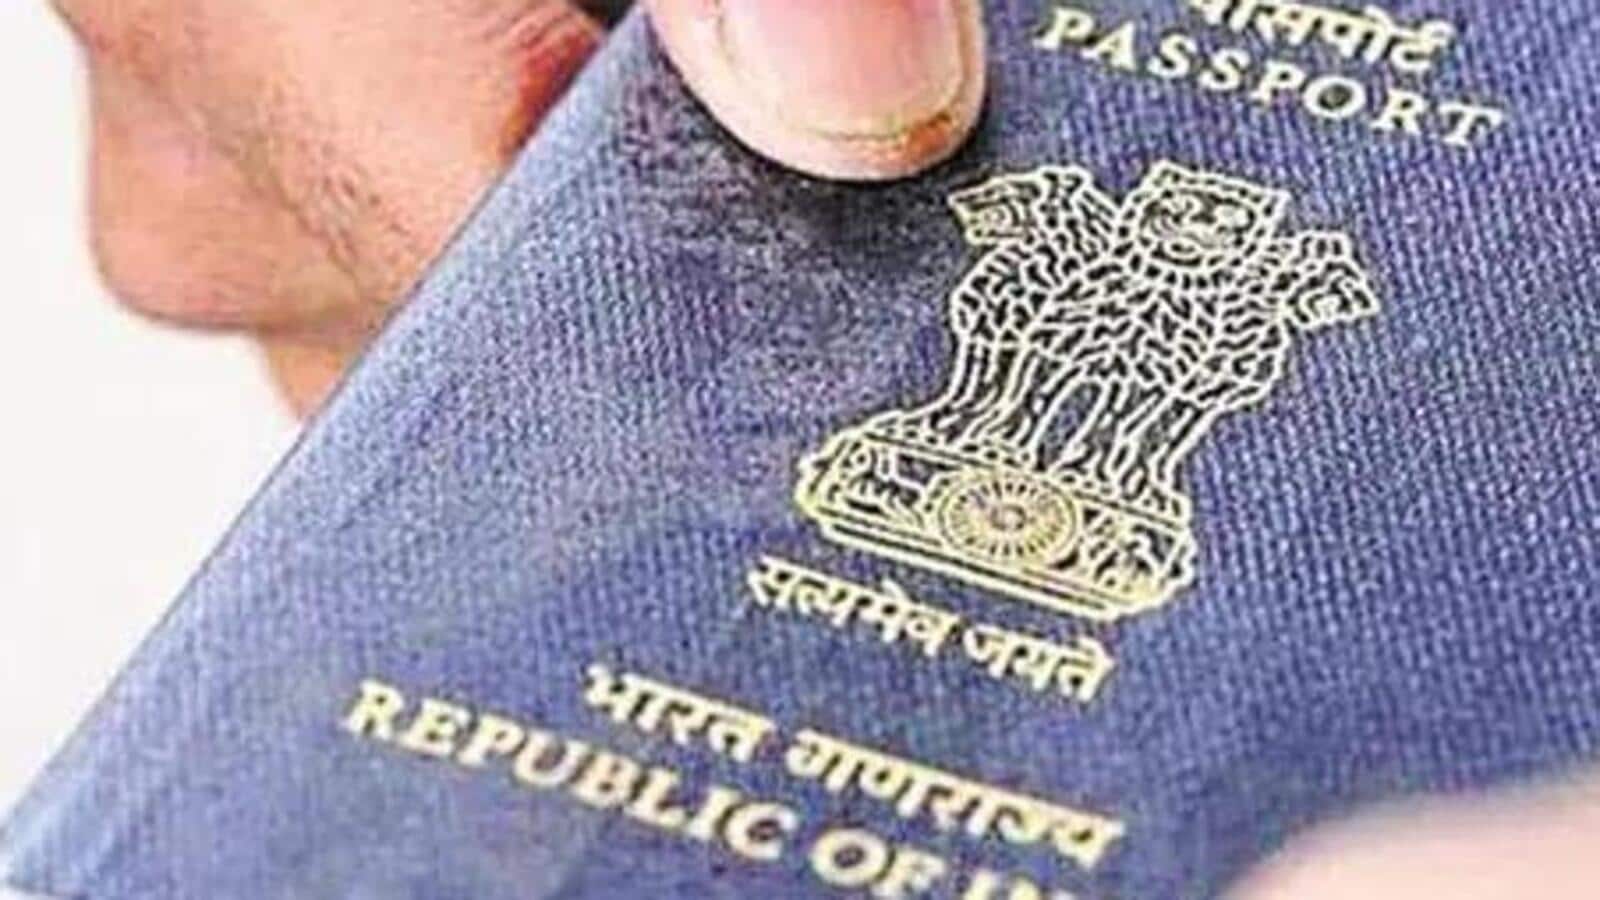 163 000 indere ga avkall på statsborgerskap i fjor: Govt |  Siste India nyheter